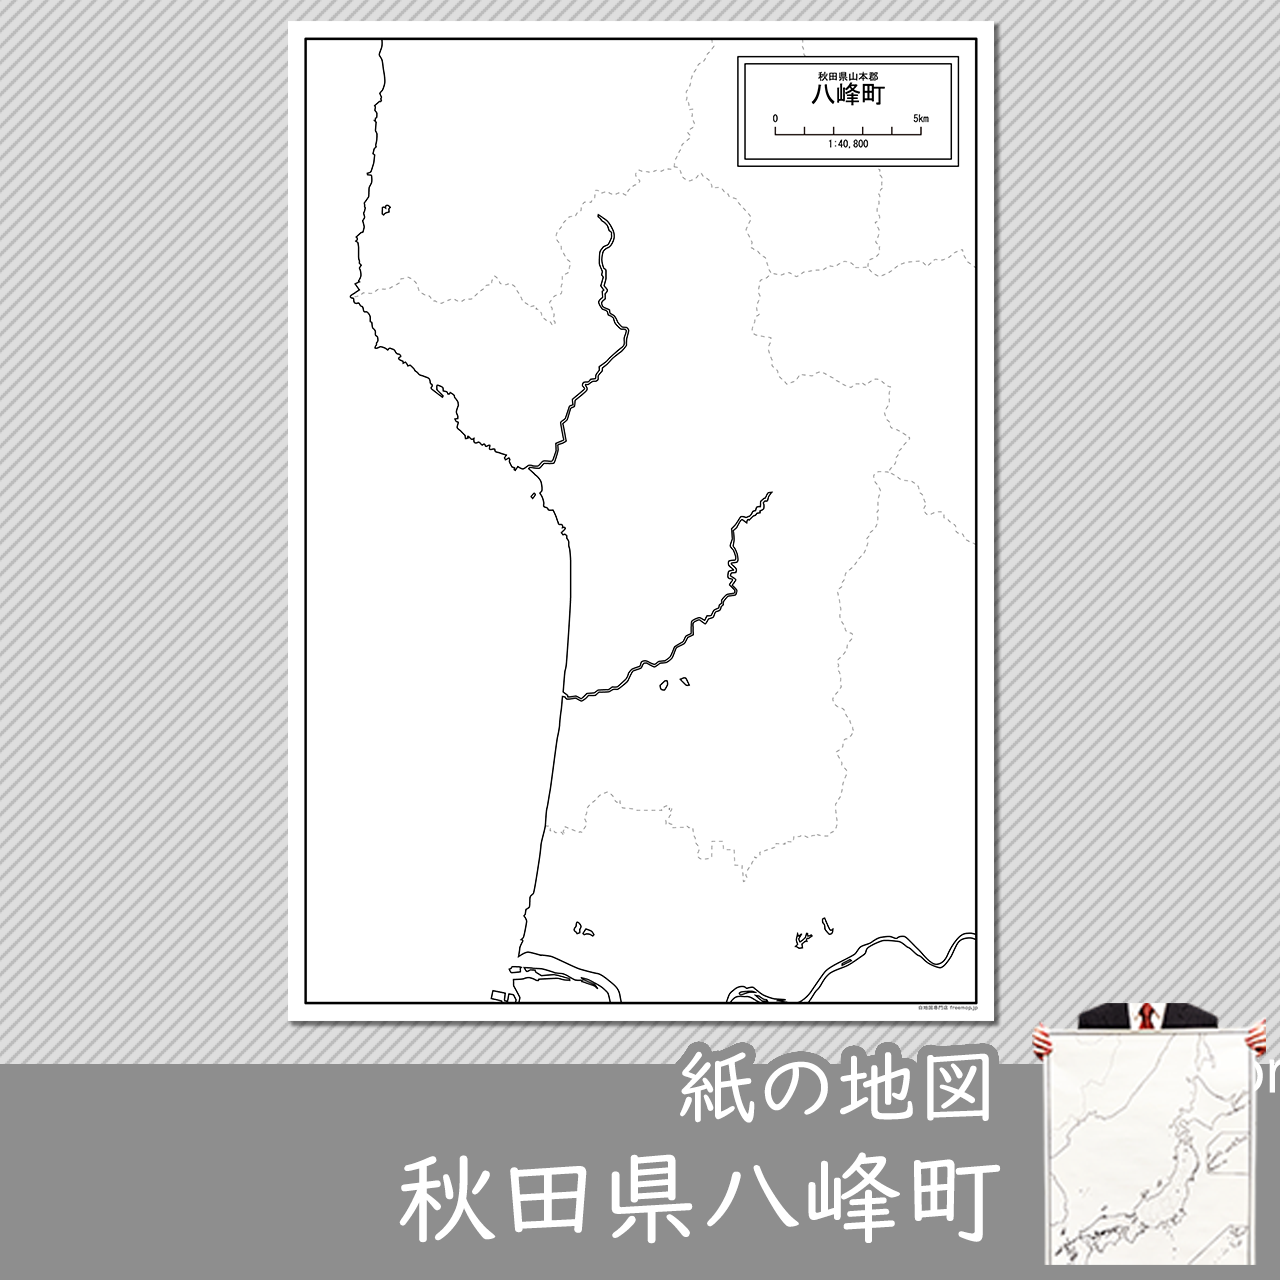 八峰町の紙の白地図のサムネイル